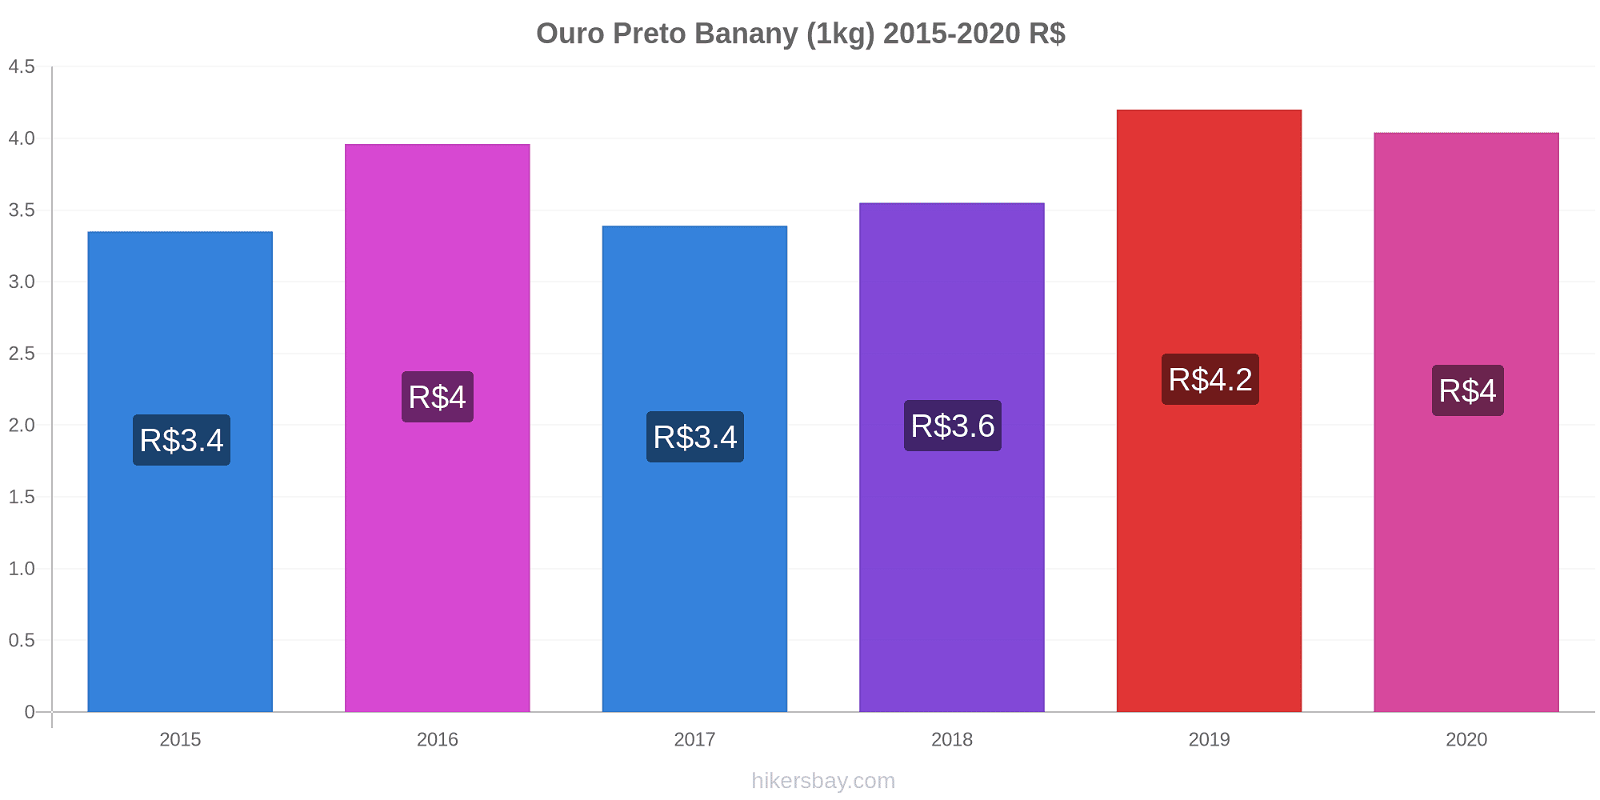 Ouro Preto zmiany cen Banany (1kg) hikersbay.com